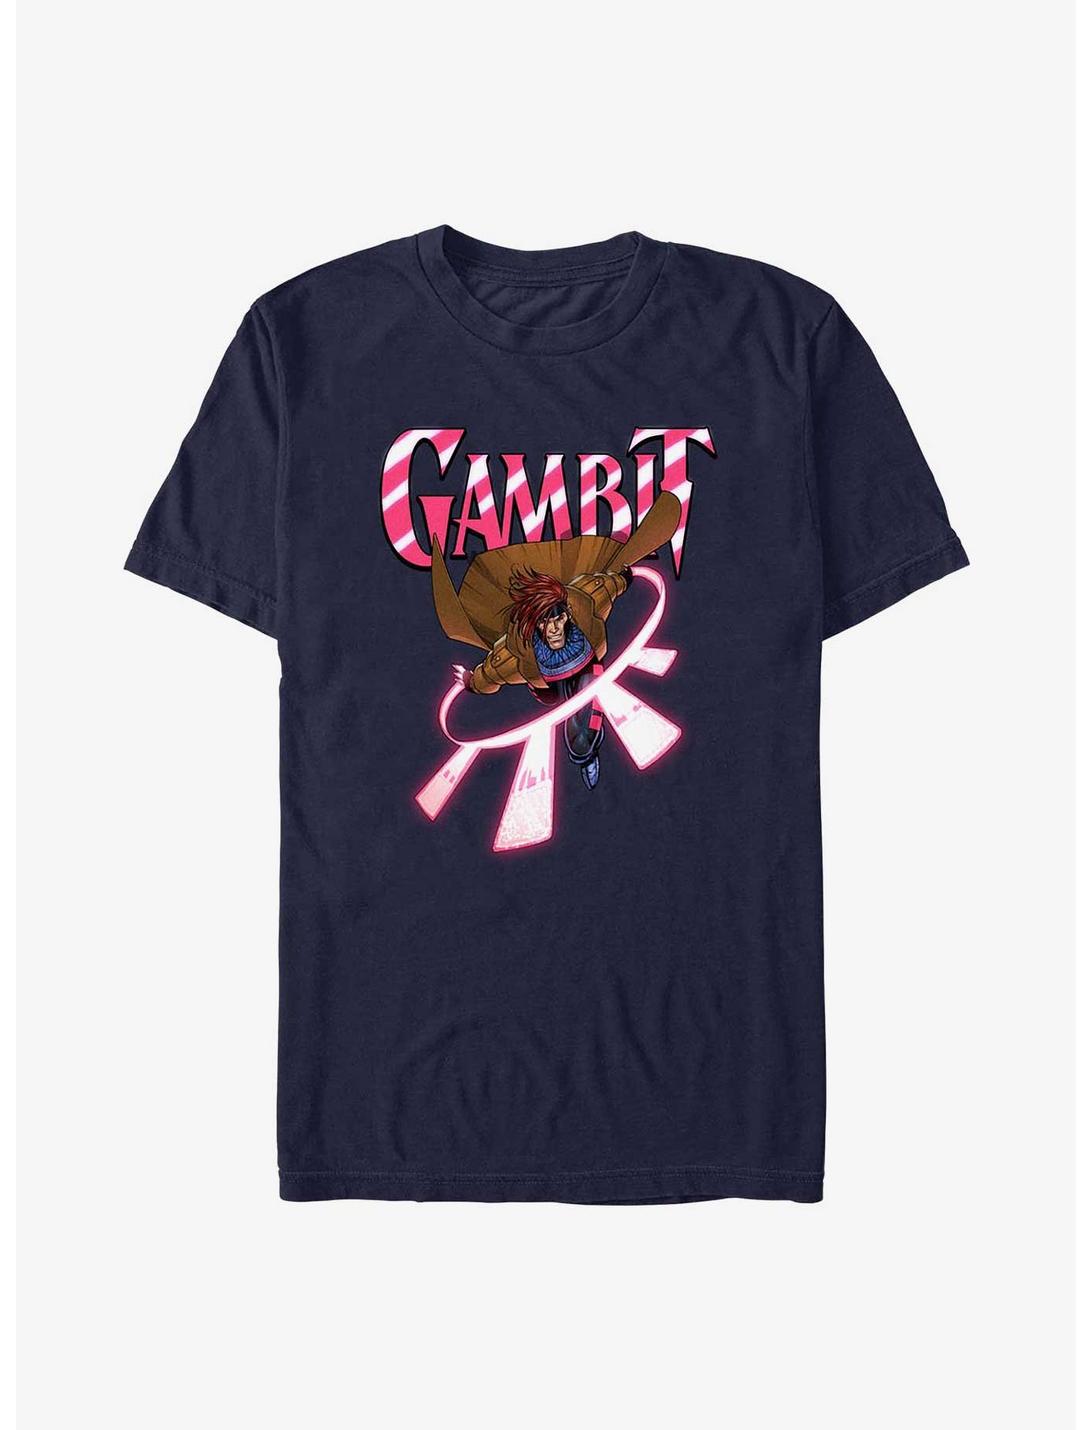 X-Men Gambit T-Shirt, NAVY, hi-res